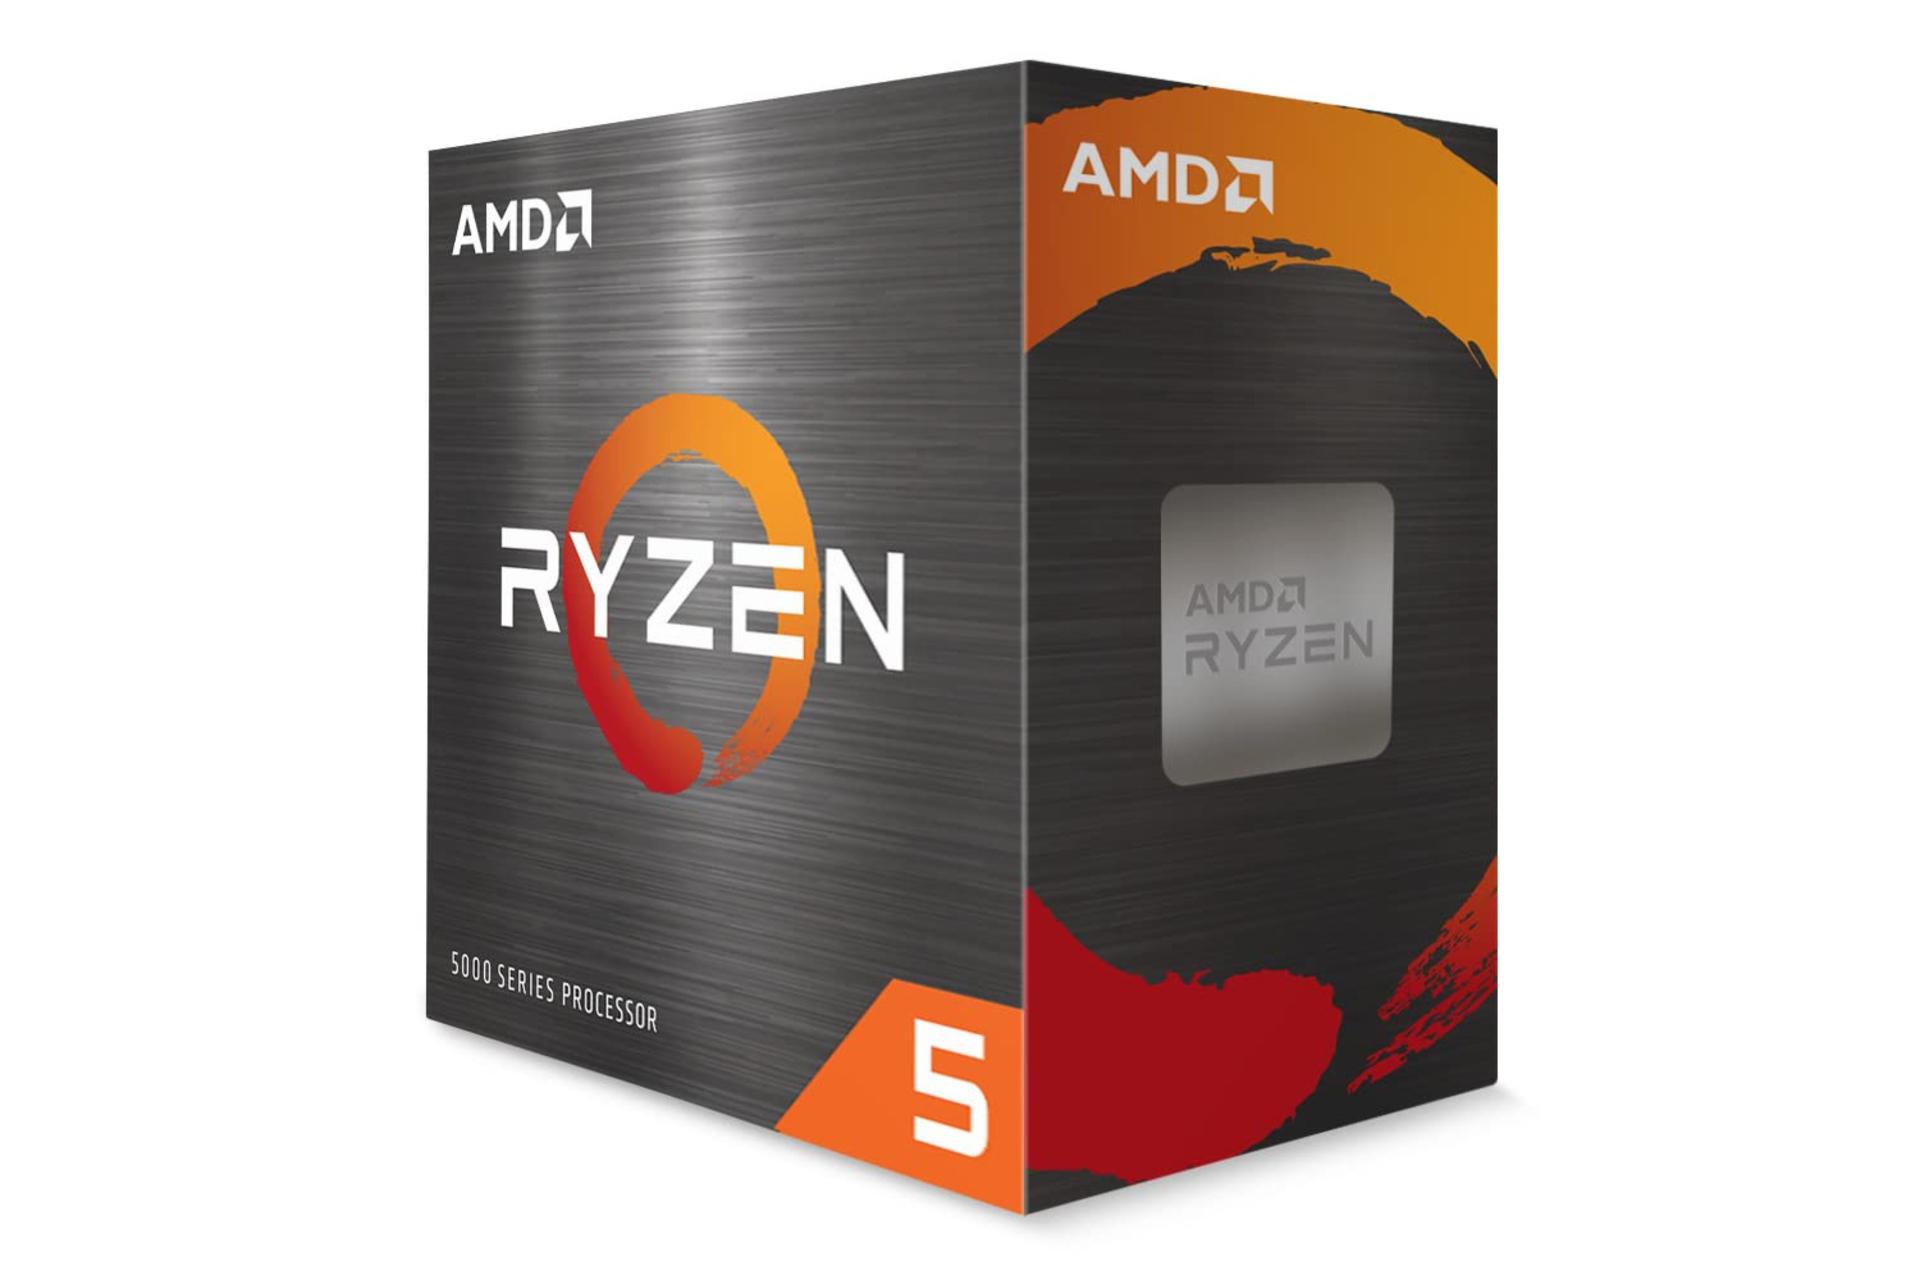 نمای راست جعبه پردازنده ای ام دی رایزن AMD Ryzen 5 5500